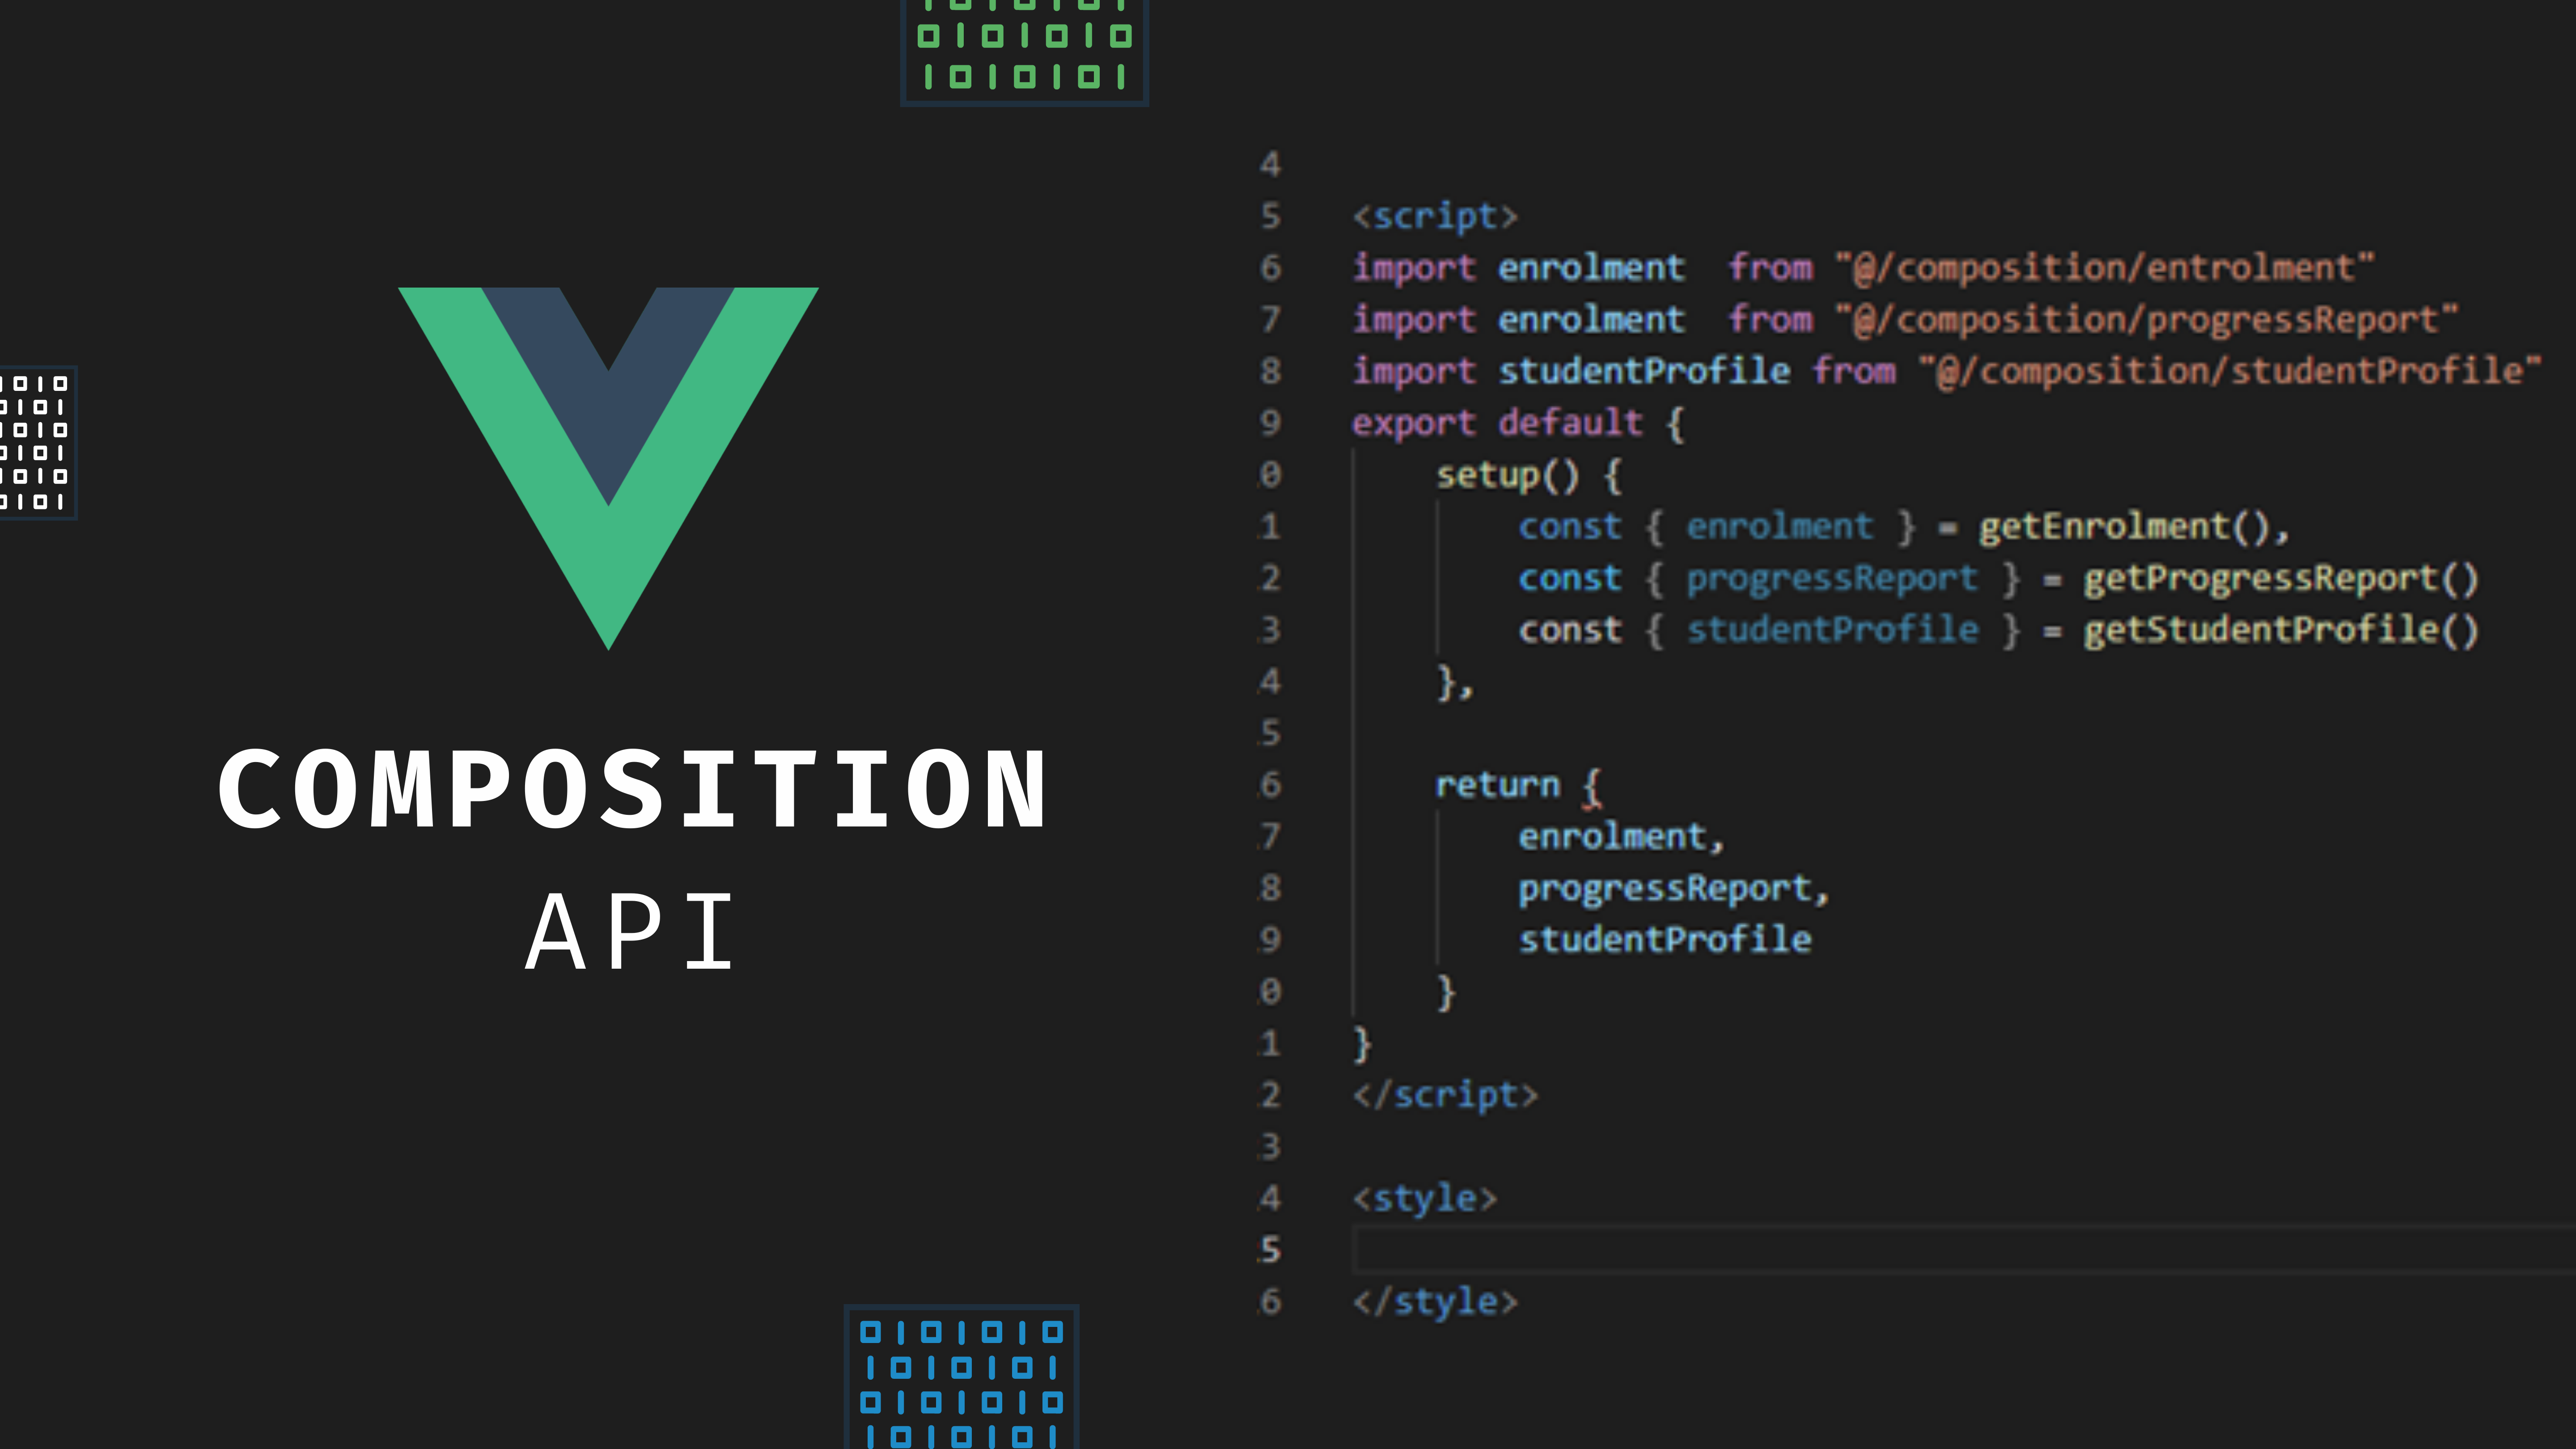 Vue Js Composition API and Component Reusability